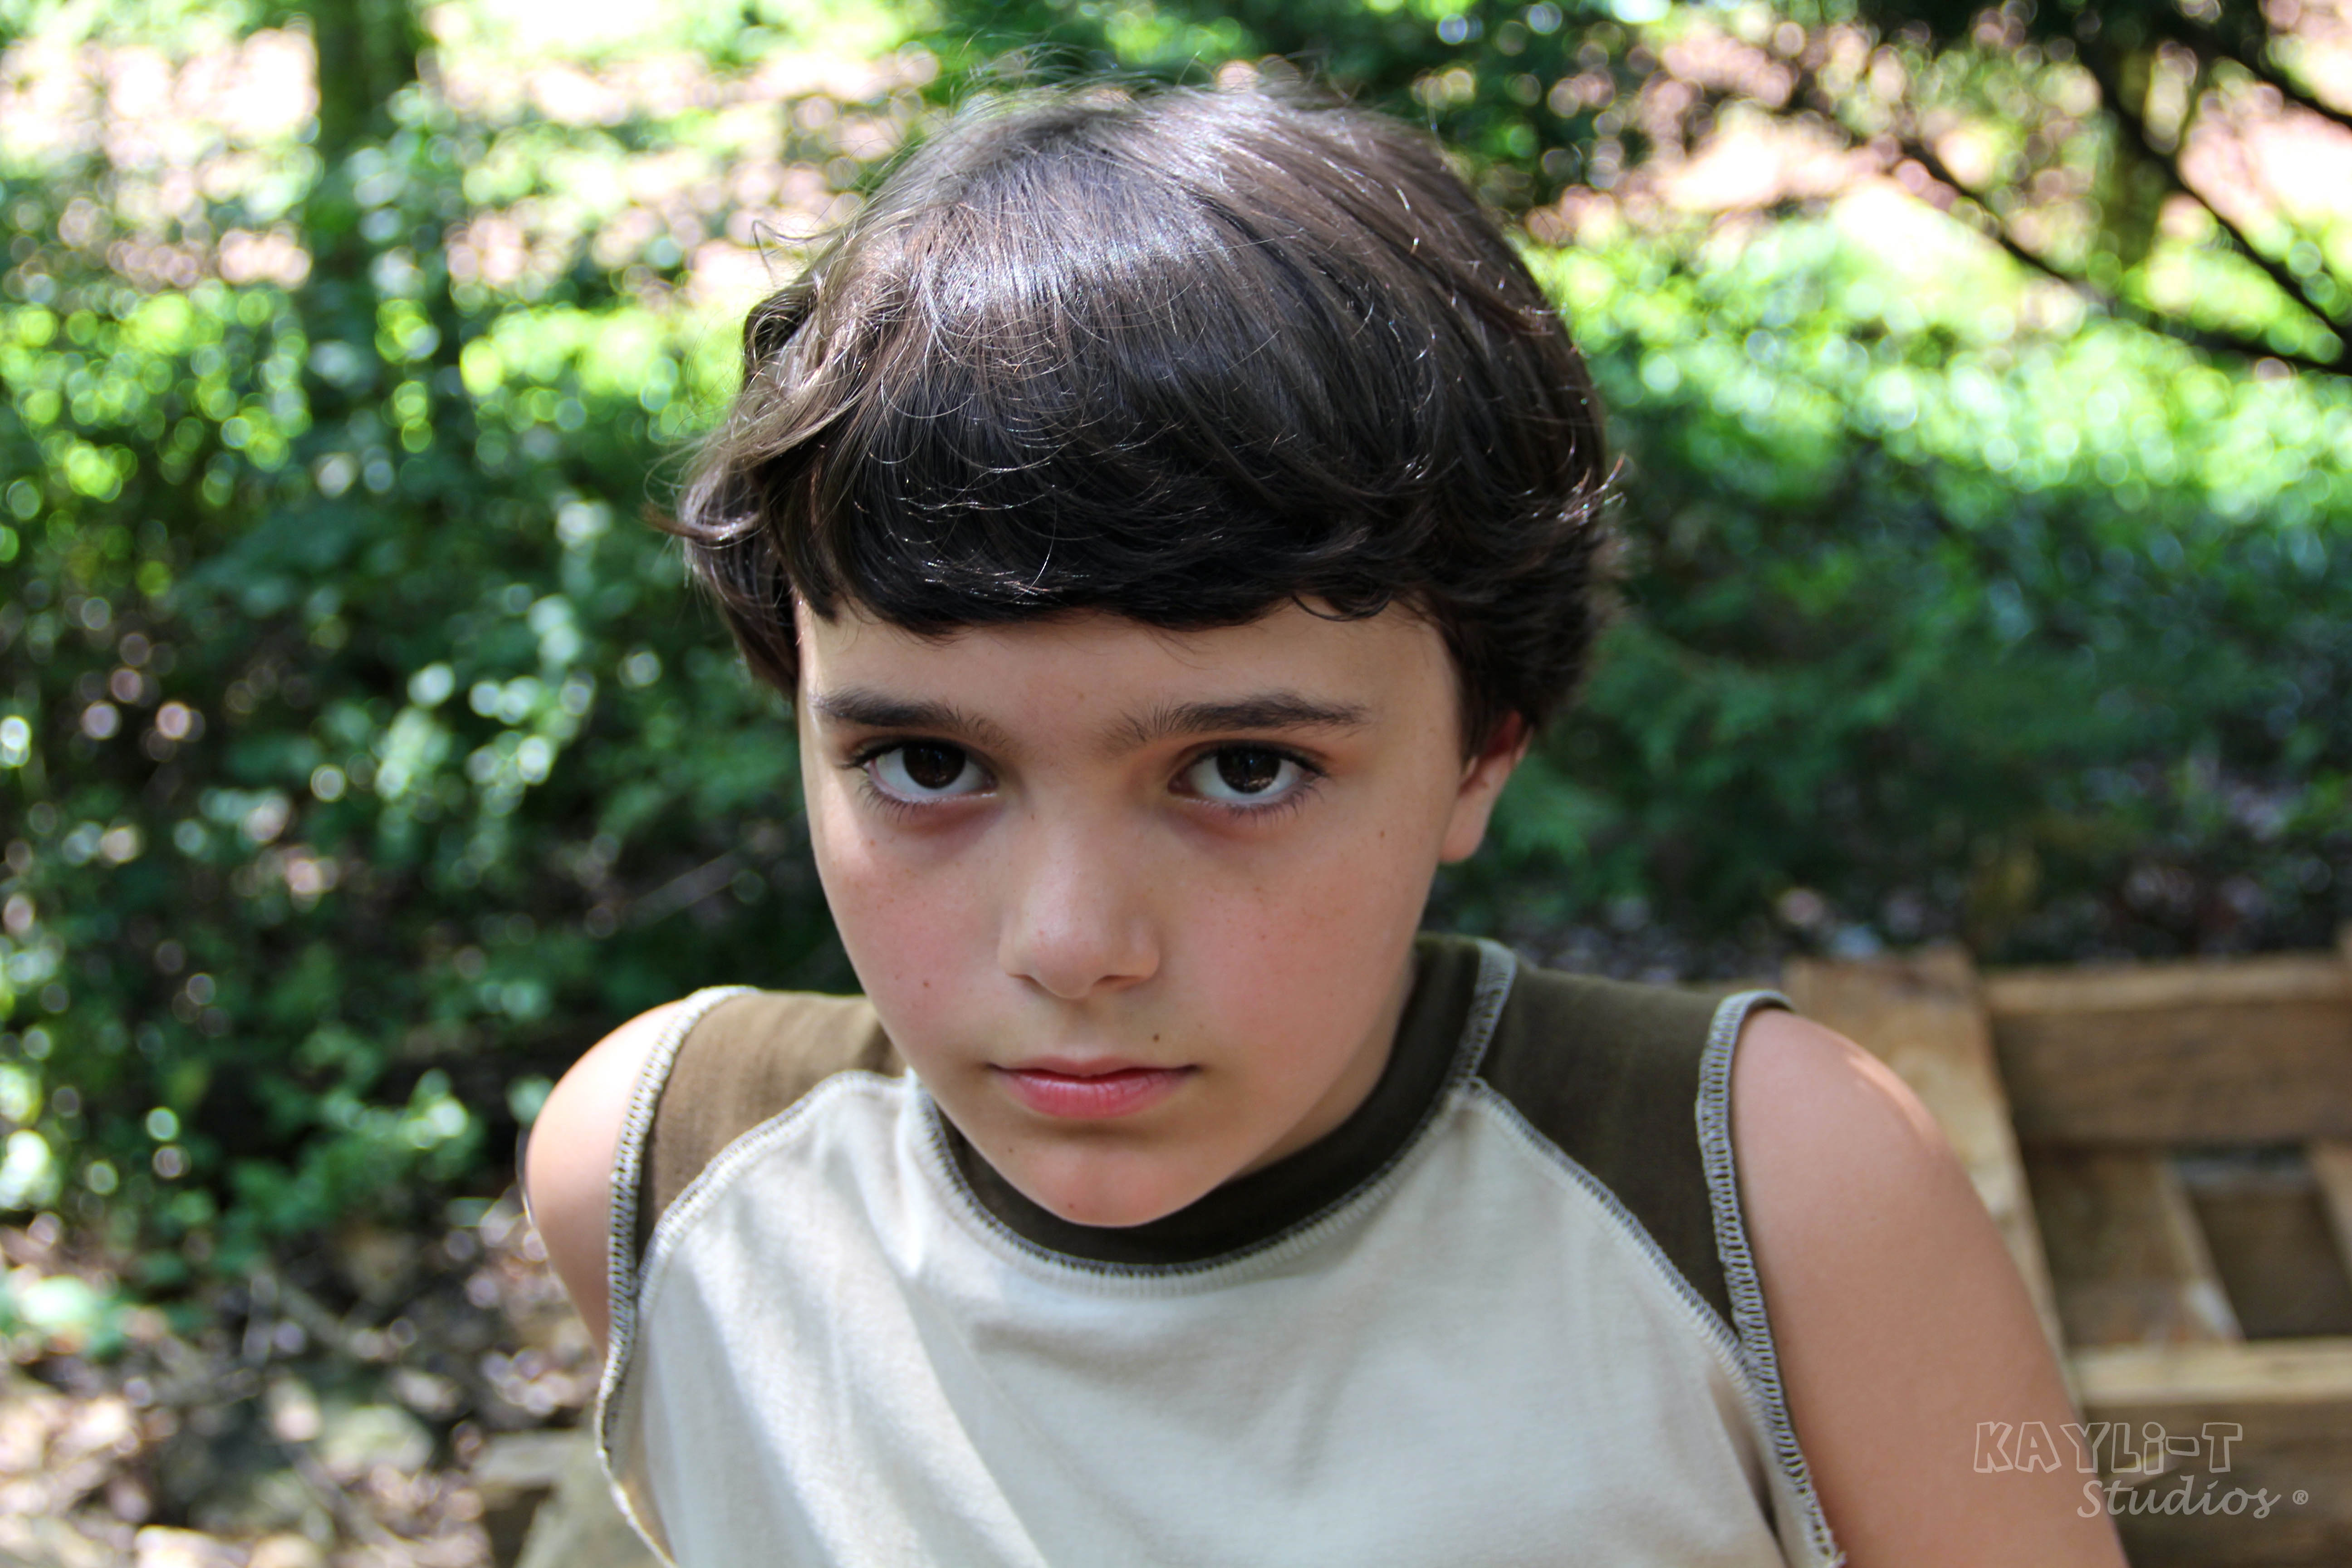 Chason Lane, Actor On set in Seneca, South Carolina 2012